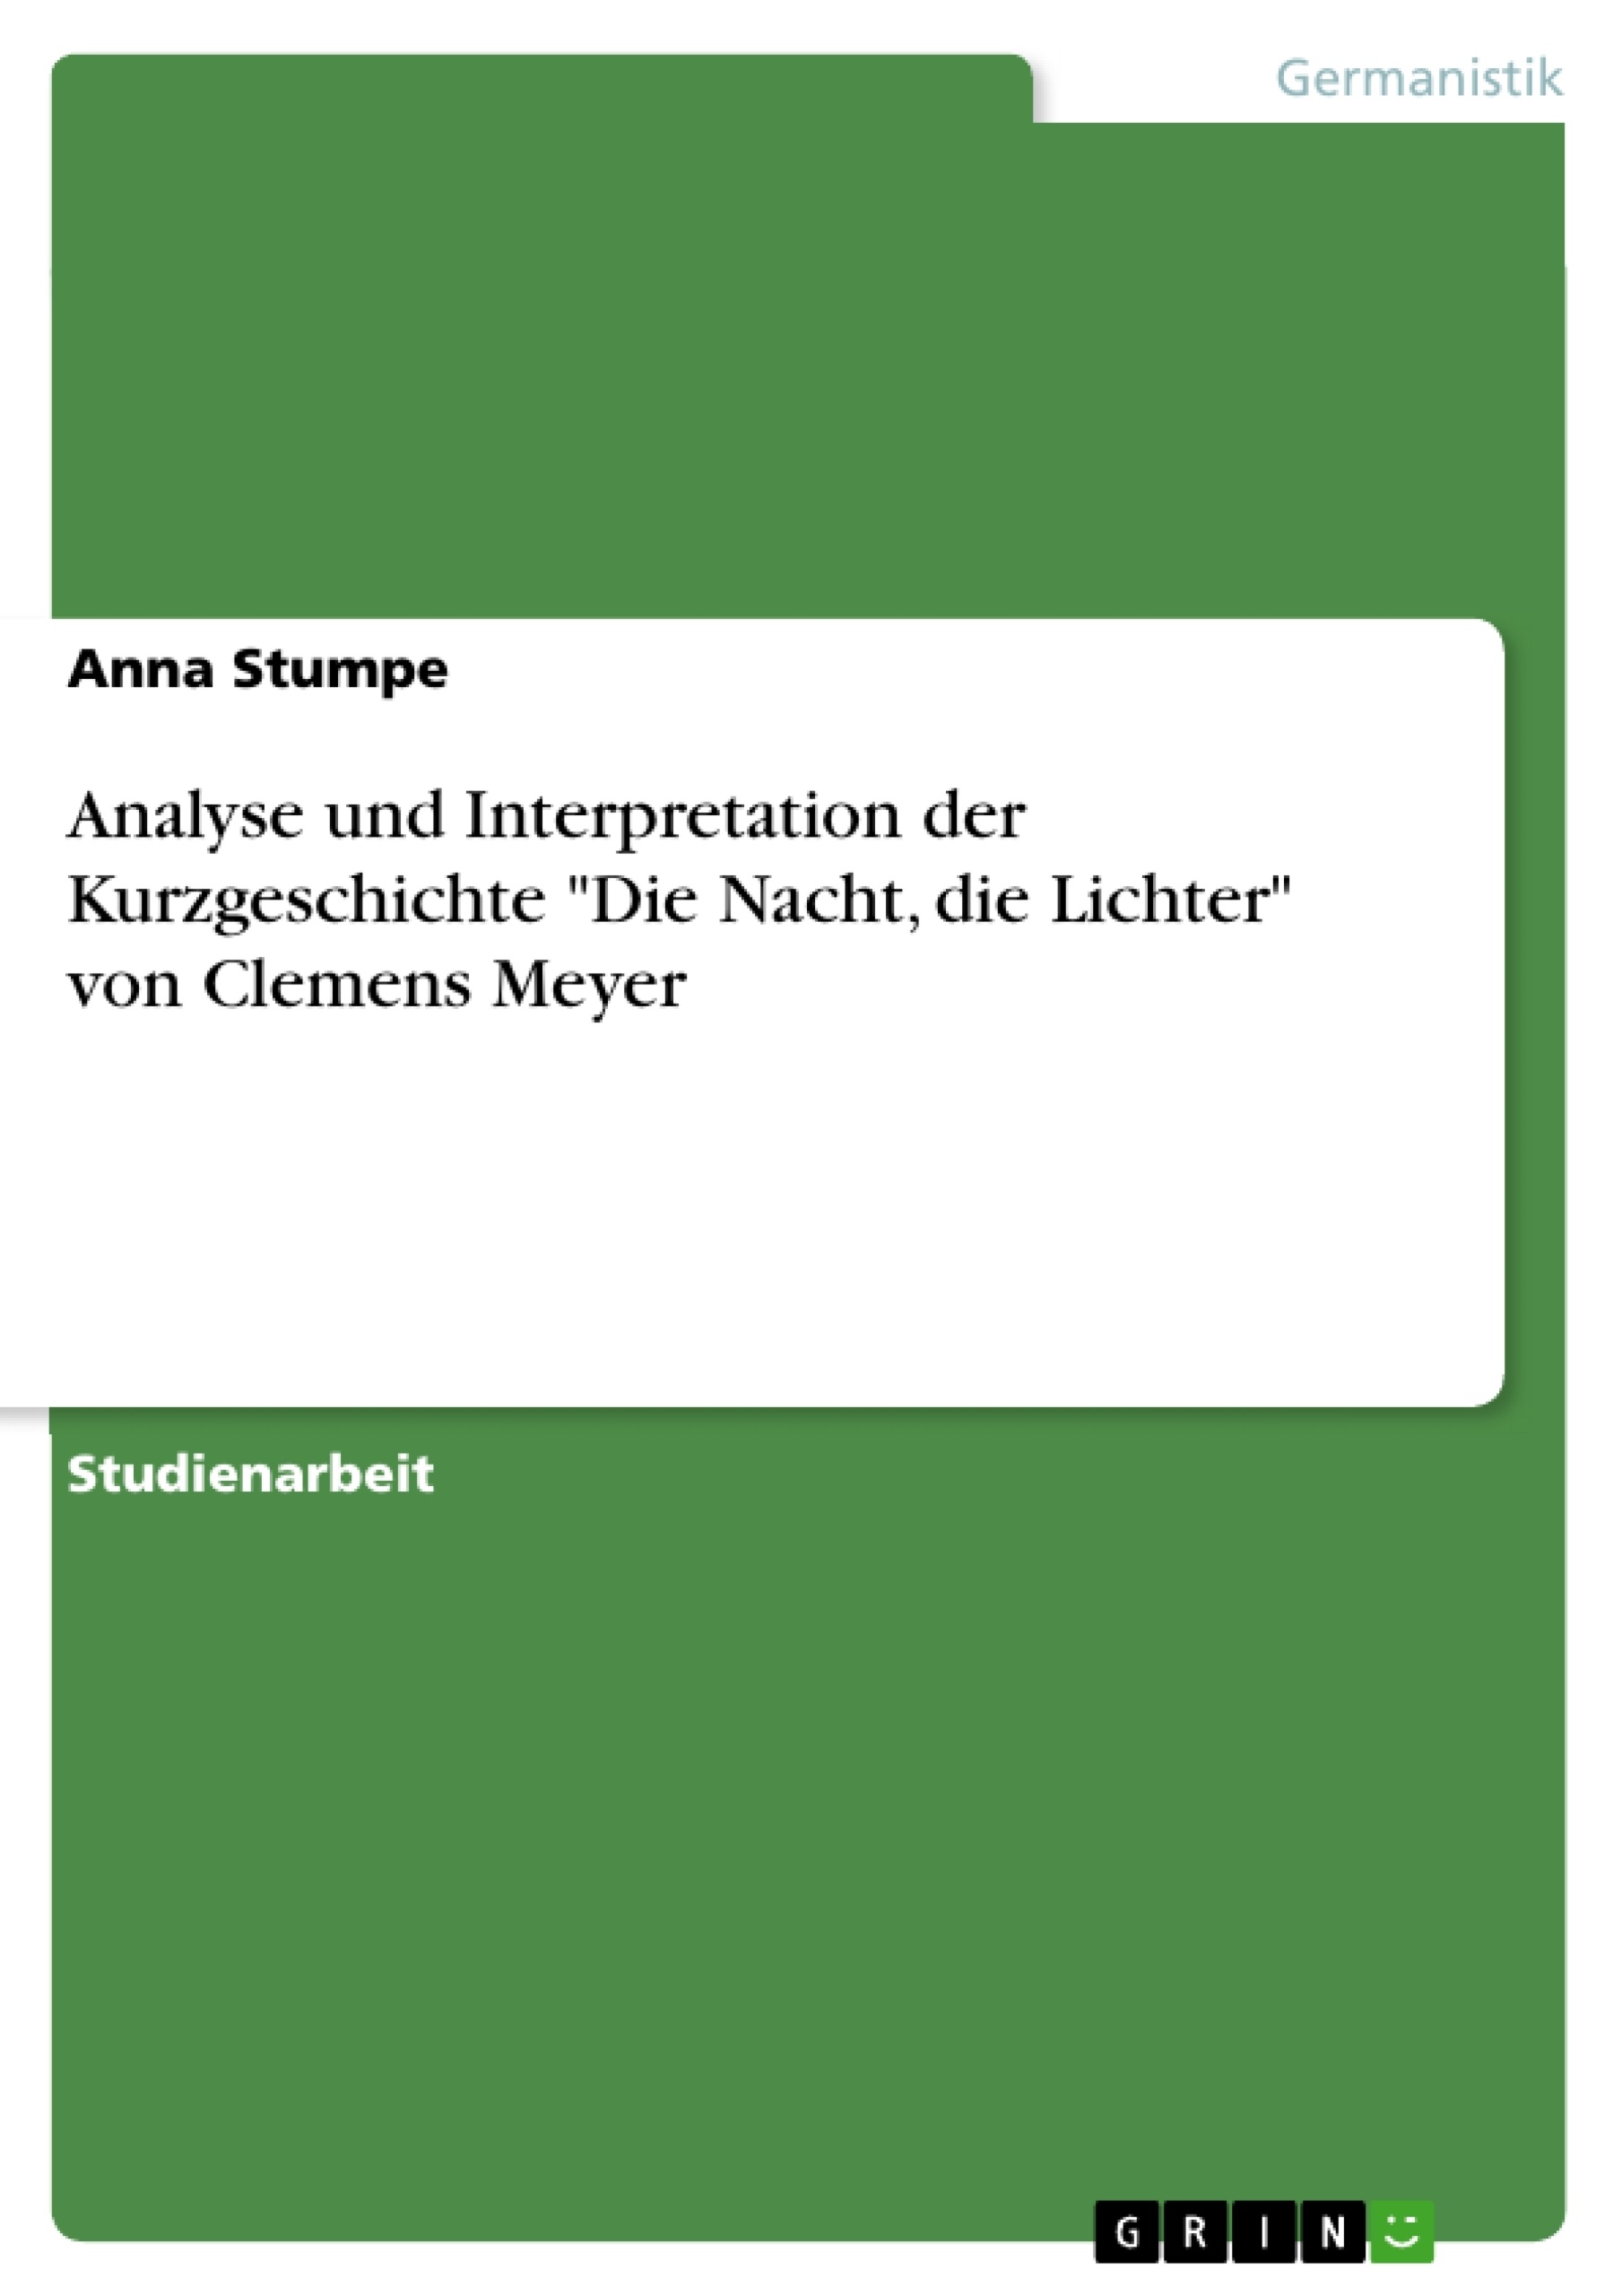 Título: Analyse und Interpretation der Kurzgeschichte "Die Nacht, die Lichter" von Clemens Meyer